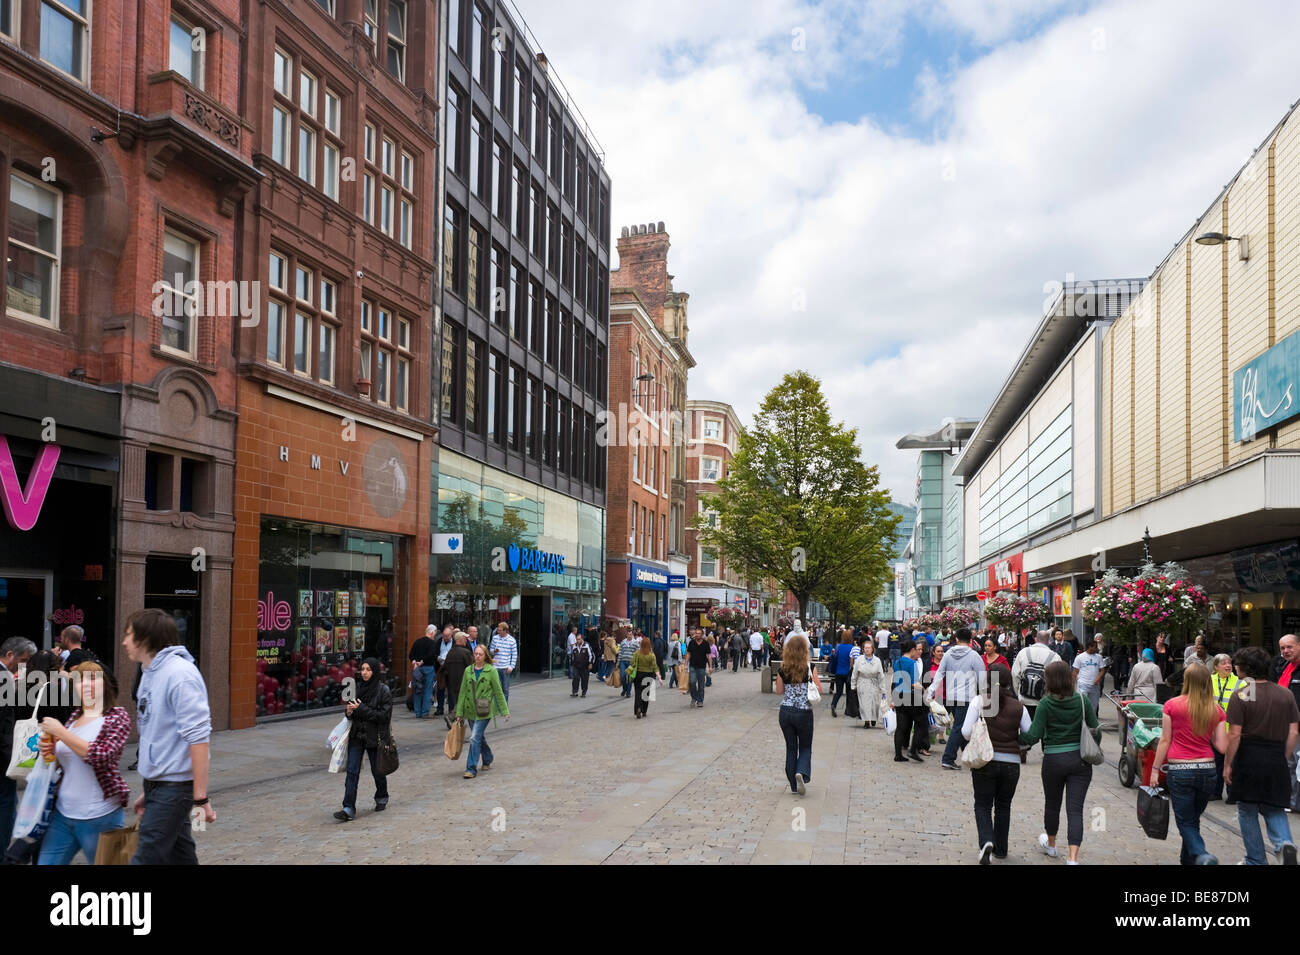 Les principaux magasins et magasins sur Market Street en direction de l'Arndale Centre, Manchester, Angleterre Banque D'Images